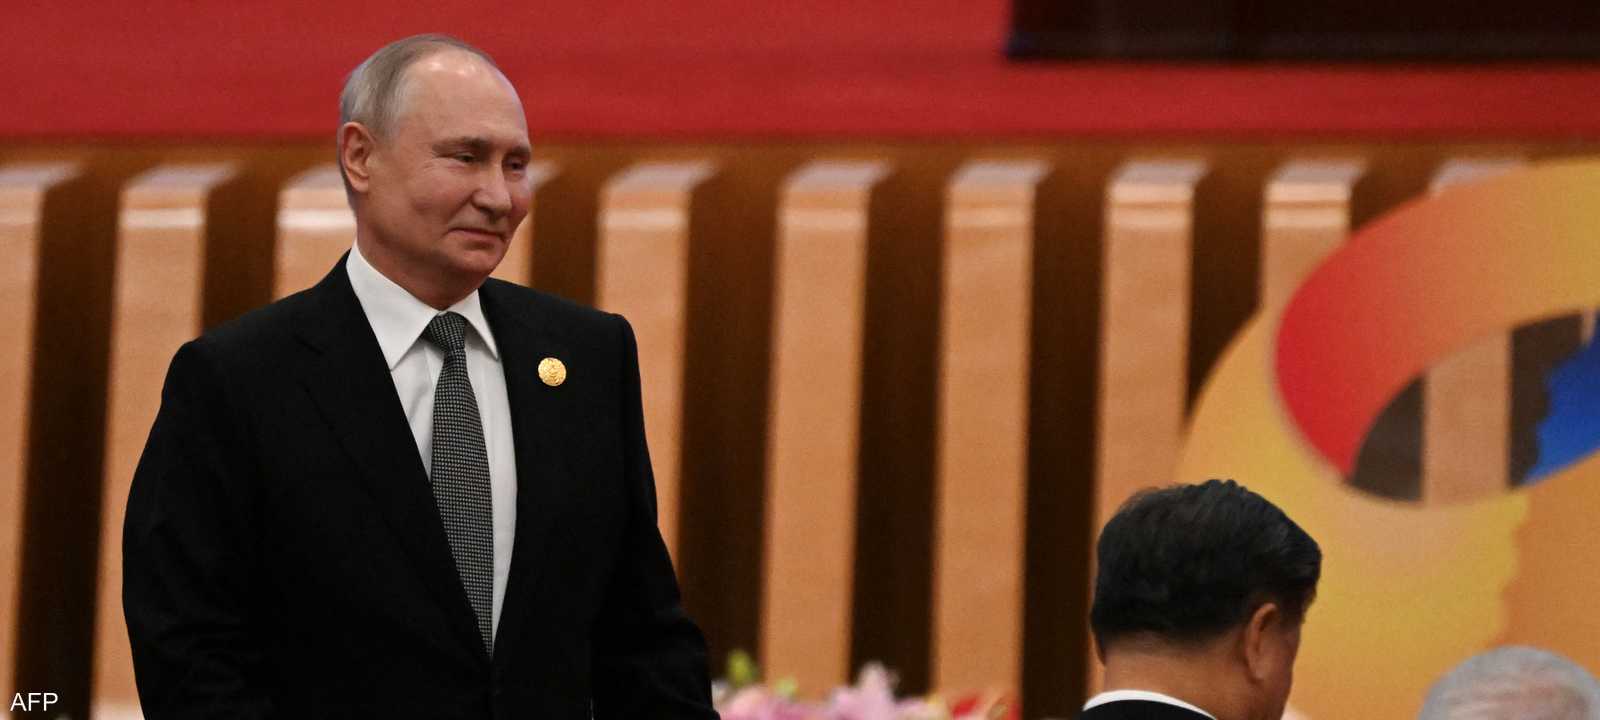 بوتين يكشف عن إنشاء المزيد من خطوط النقل